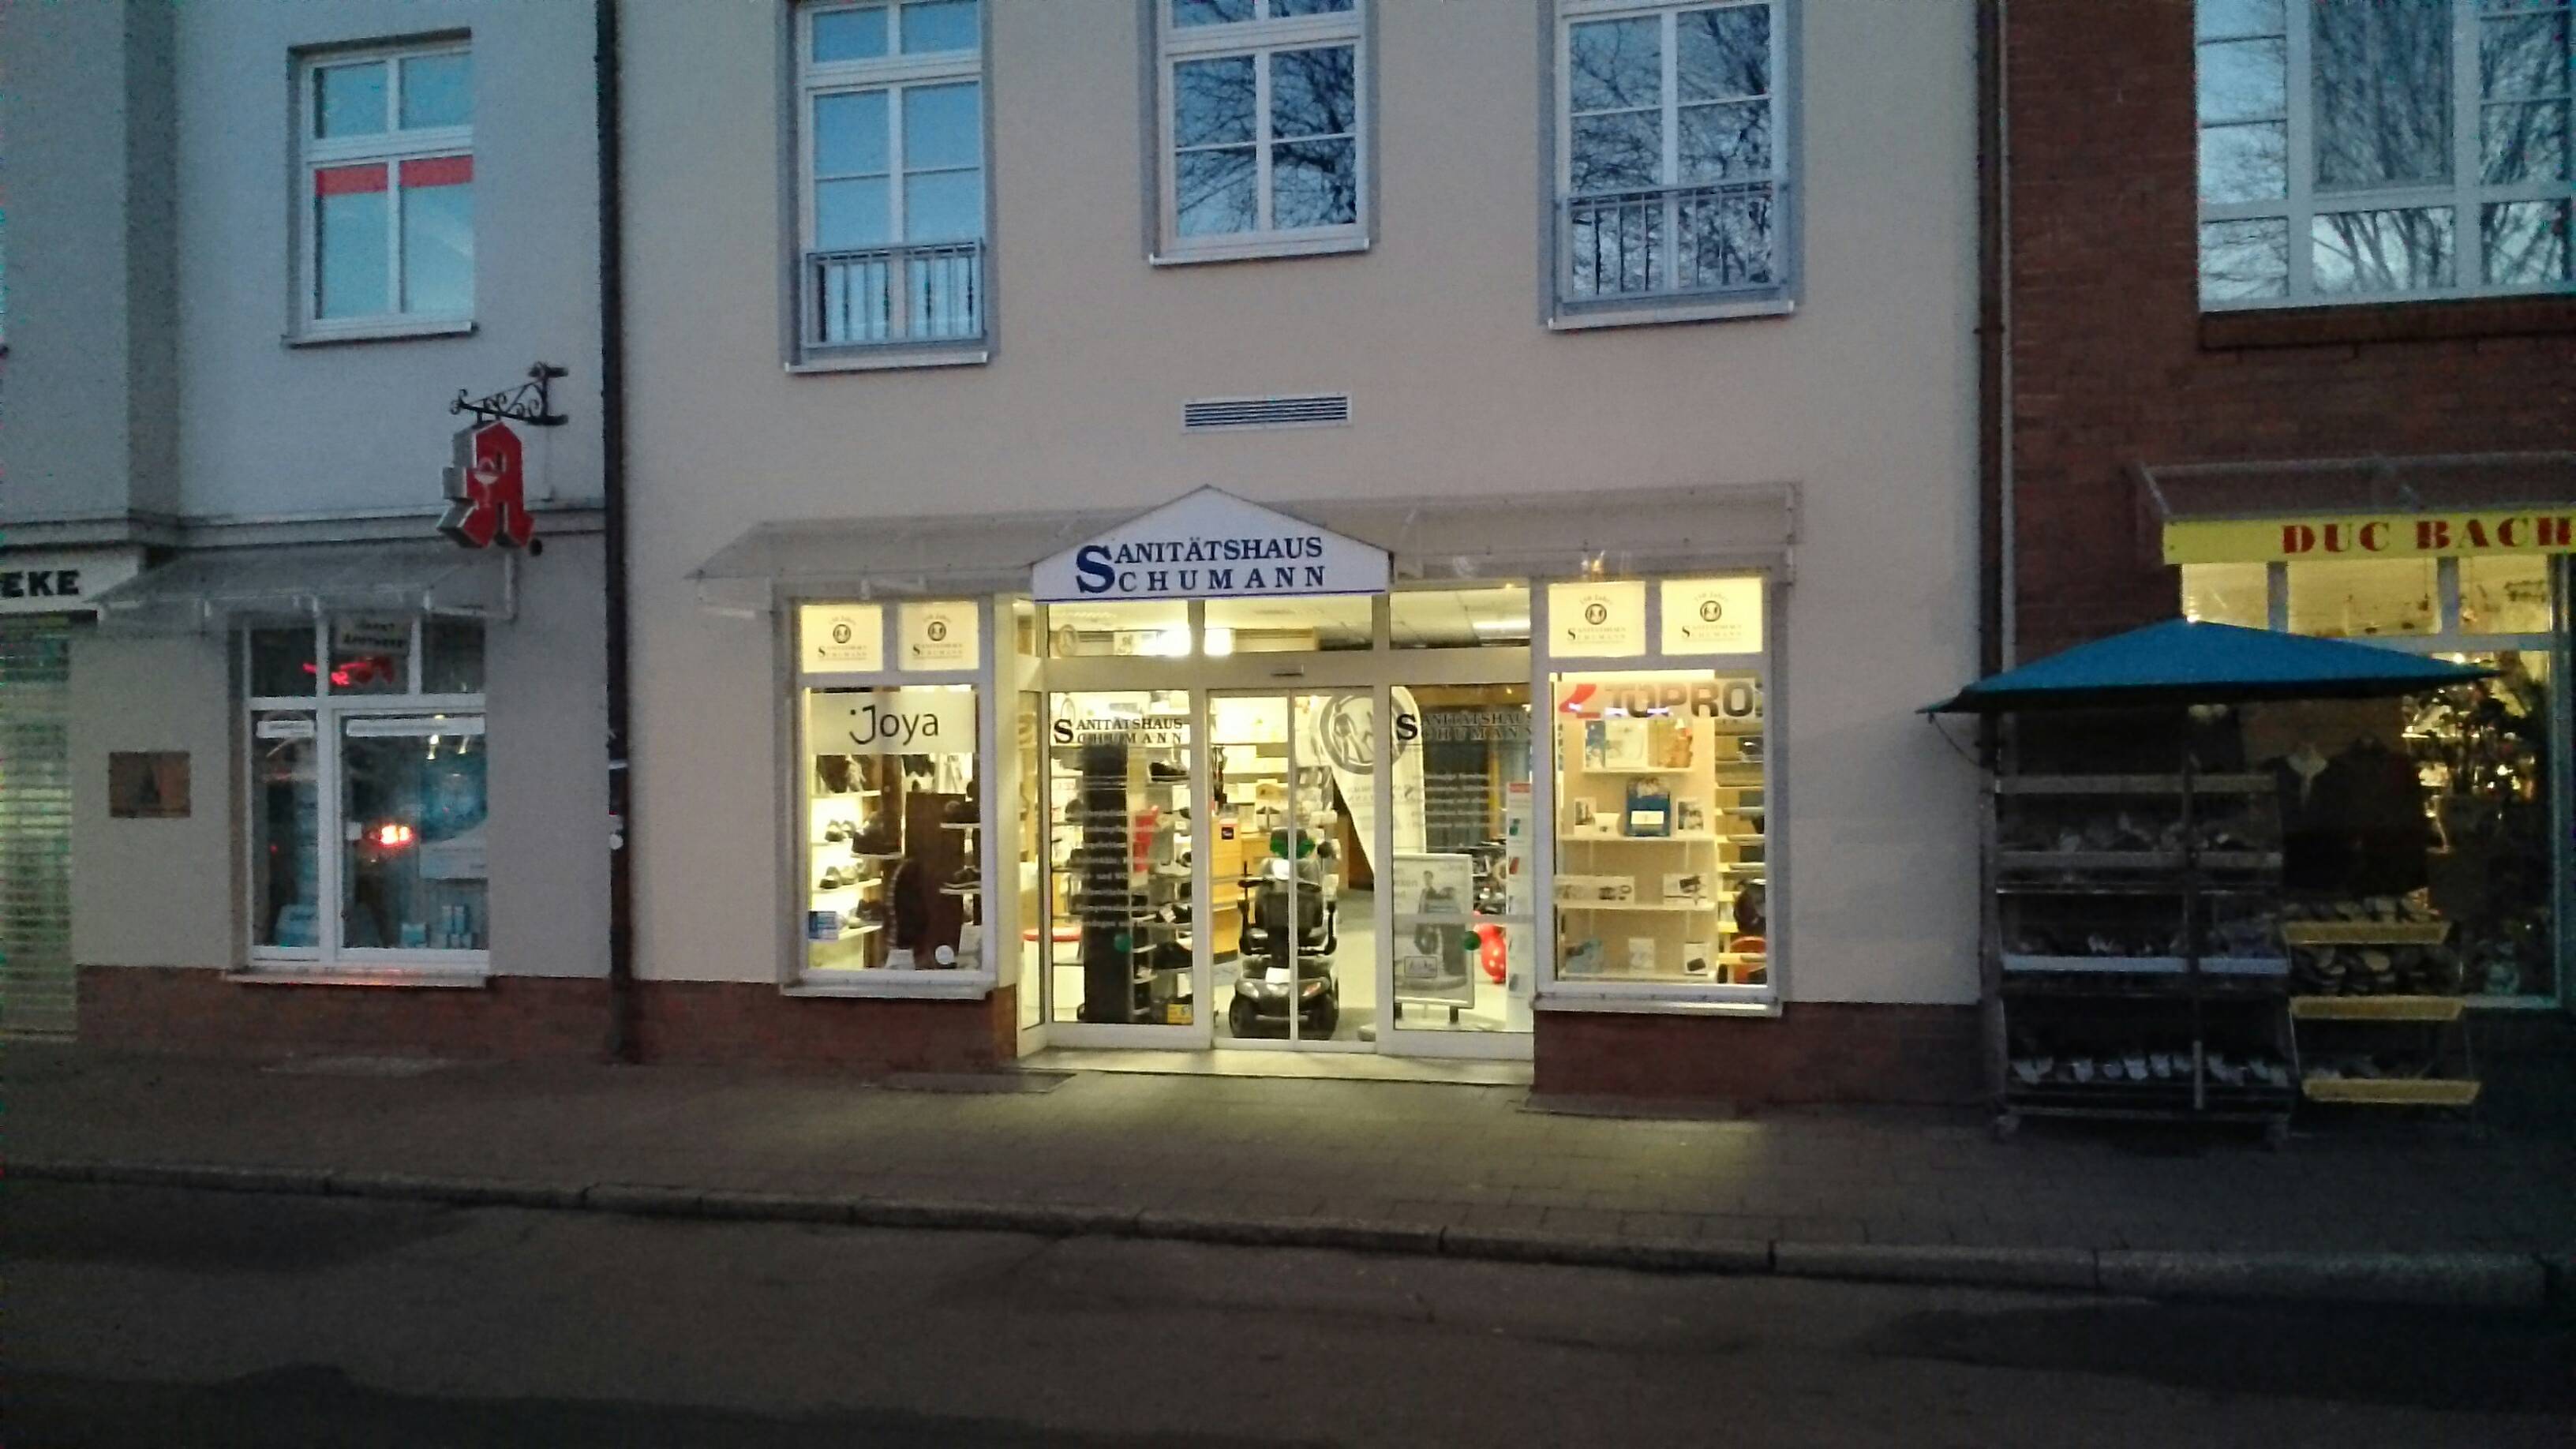 Bild 3 Sanitätshaus Schumann in Stralsund